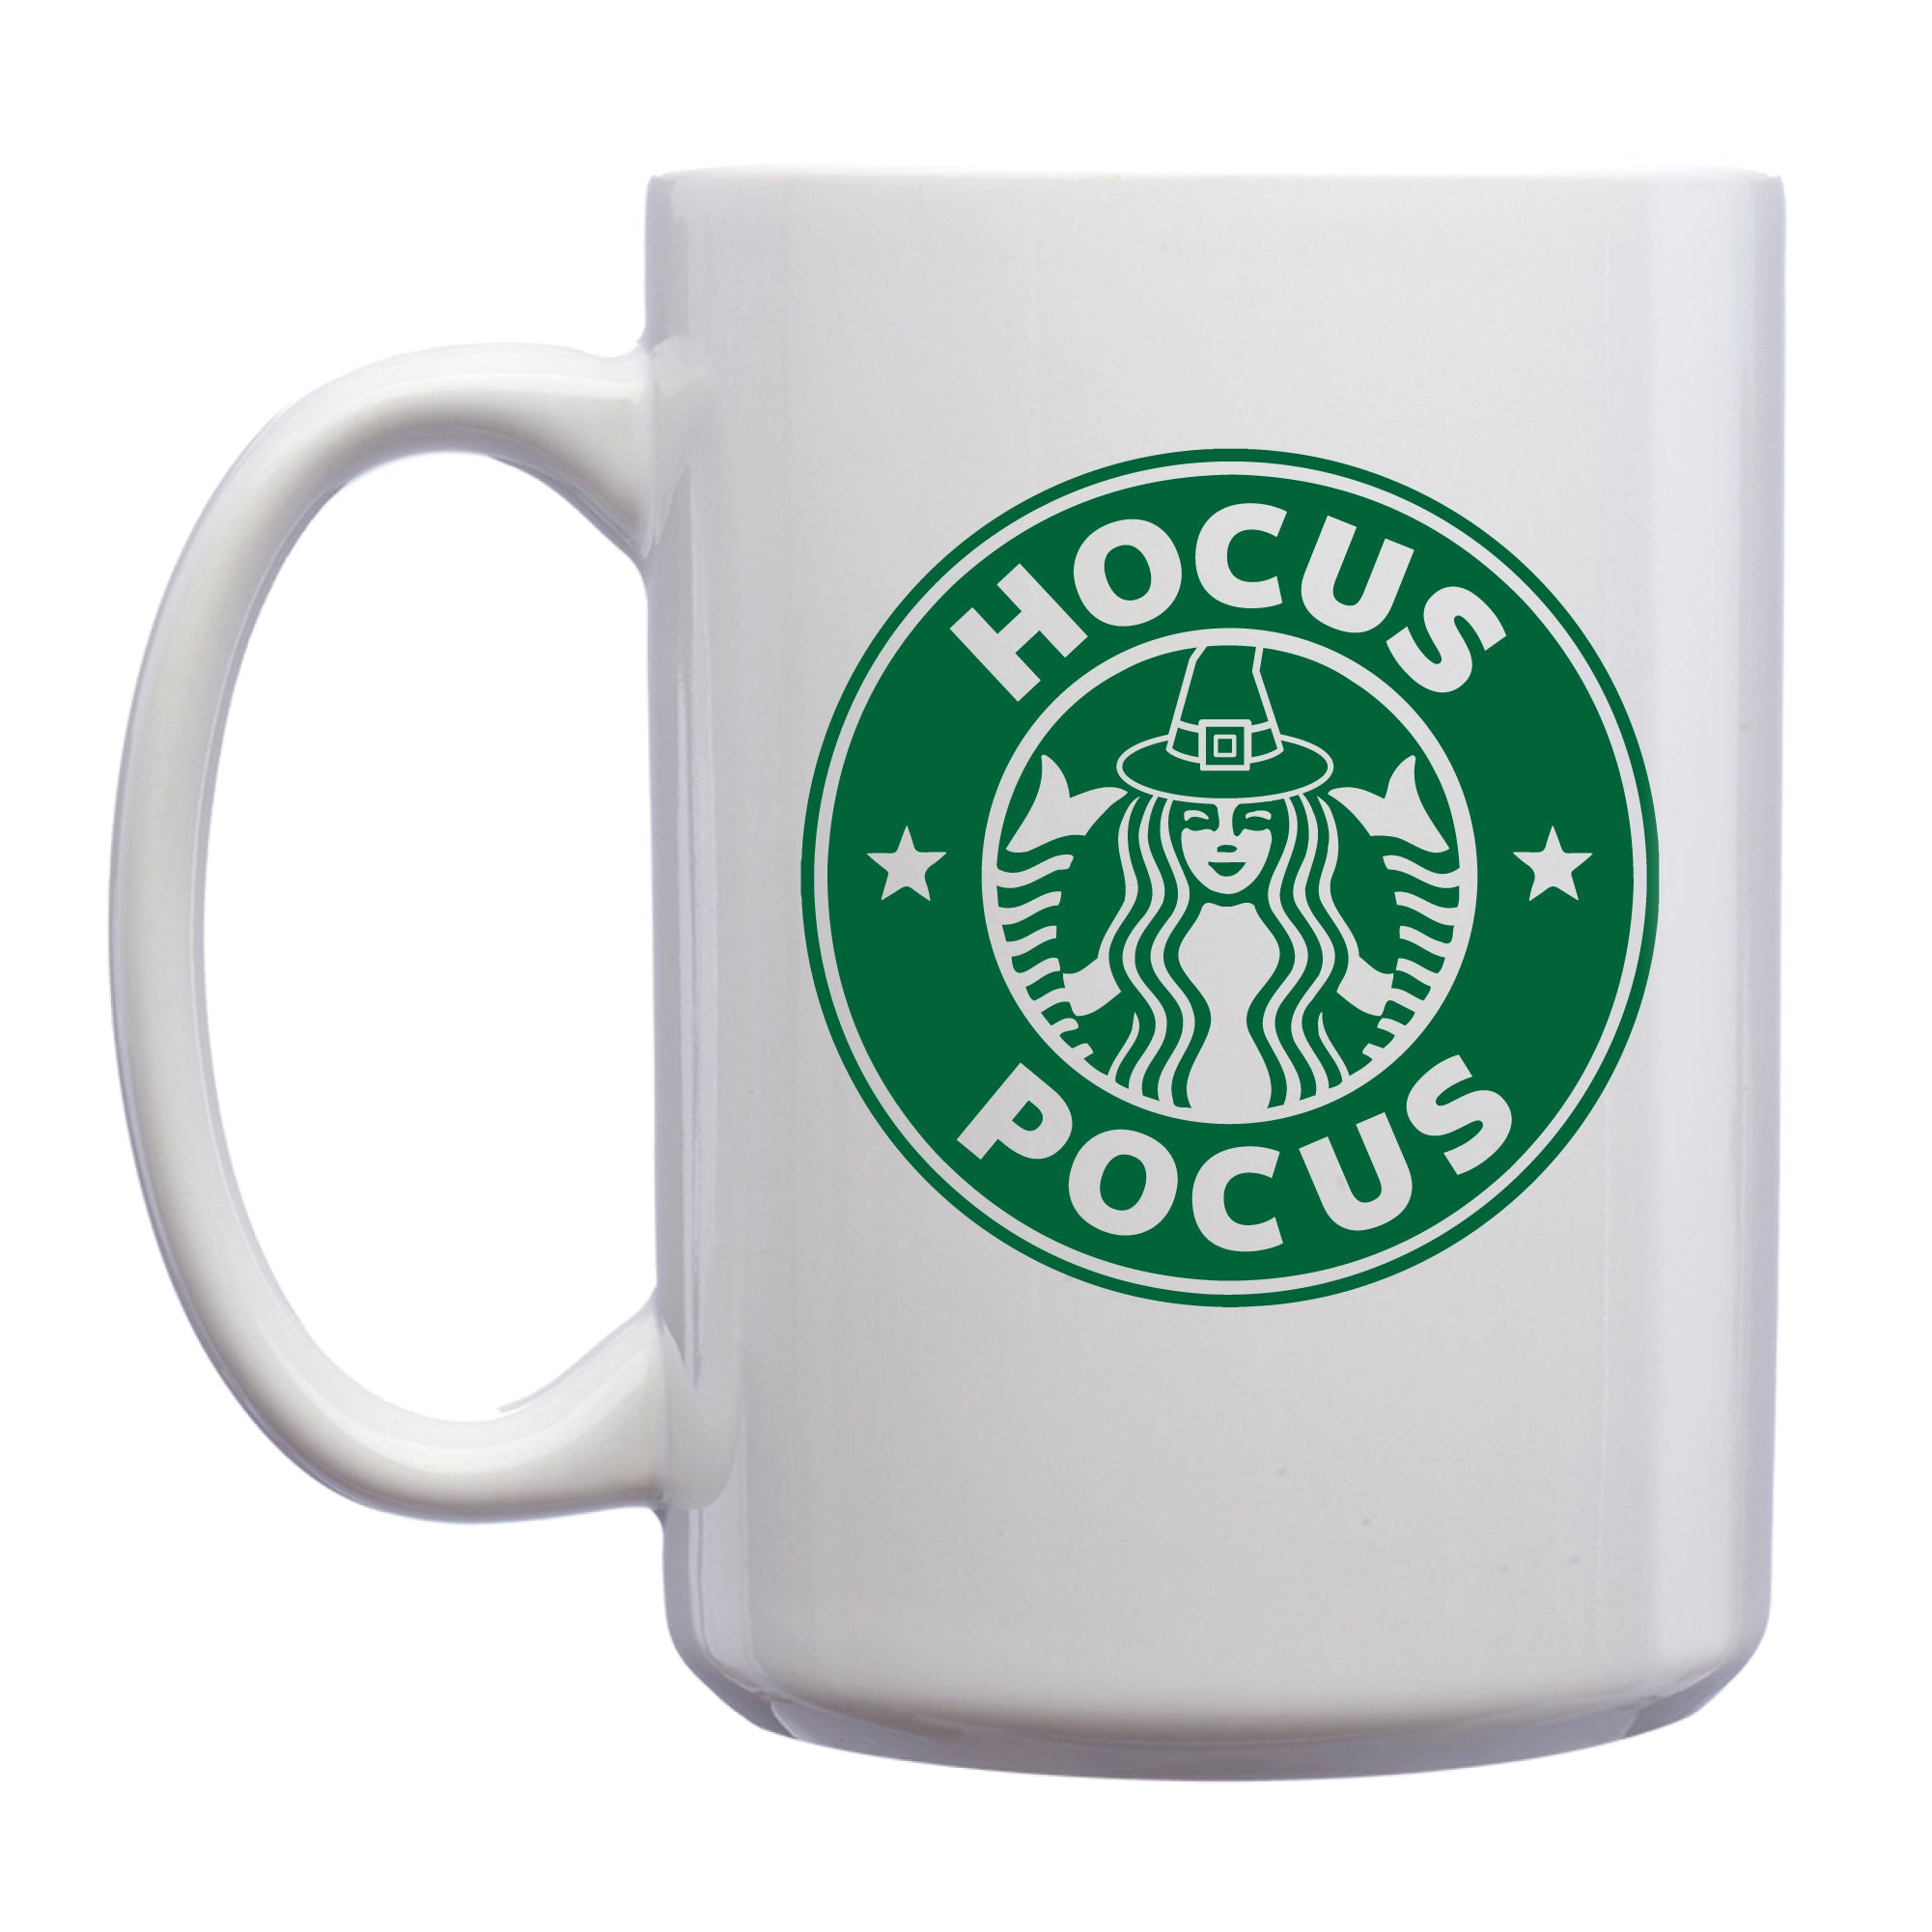 Hocus Pocus 15 oz. Graphic Mug